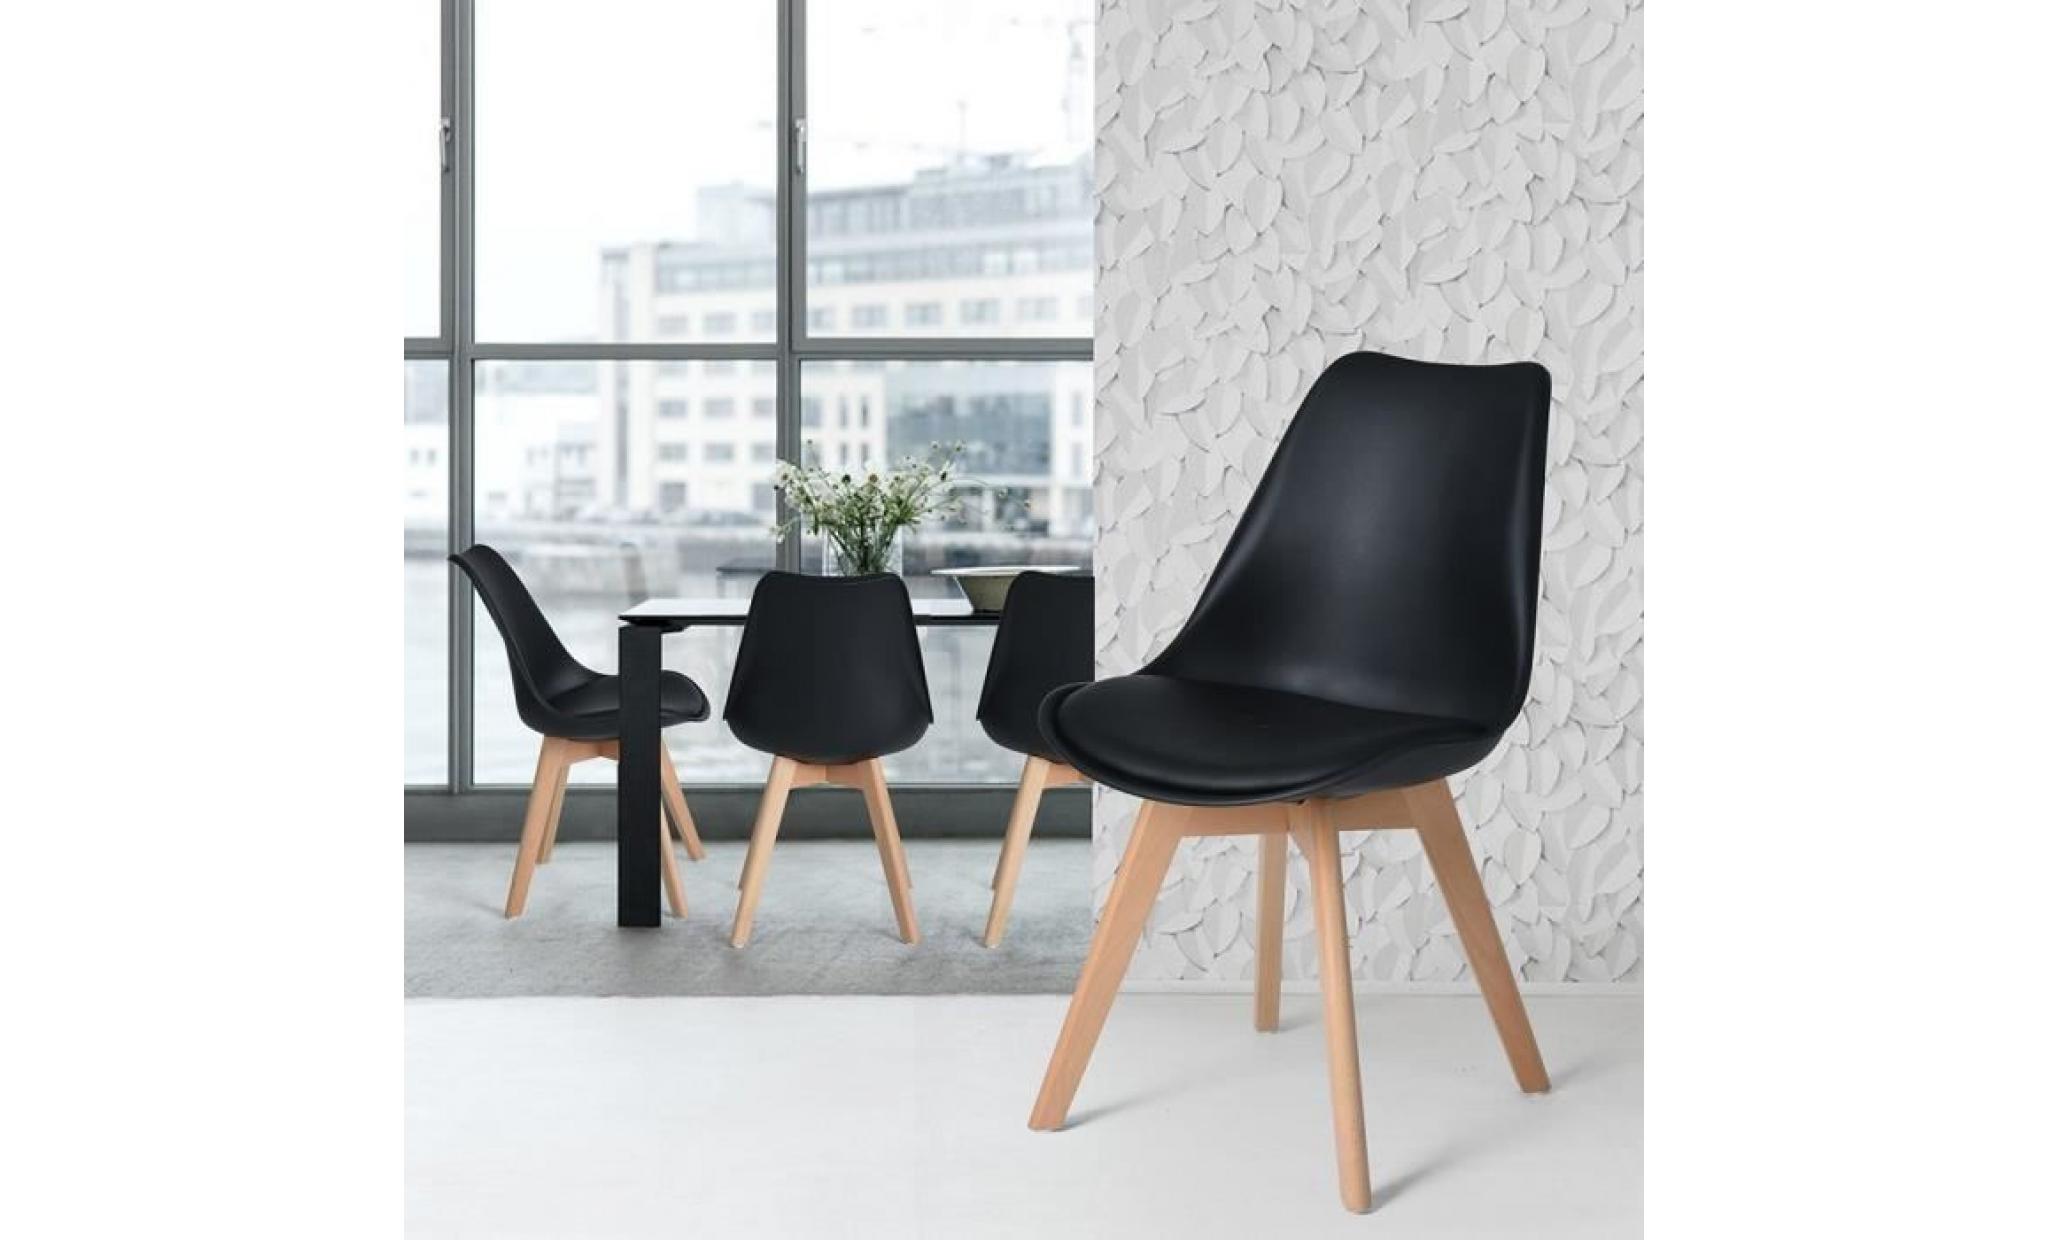 jkk lot de 6 chaises design contemporain nordique scandinave  tulipe chaises  pieds en bois de hêtre massif   noir pas cher